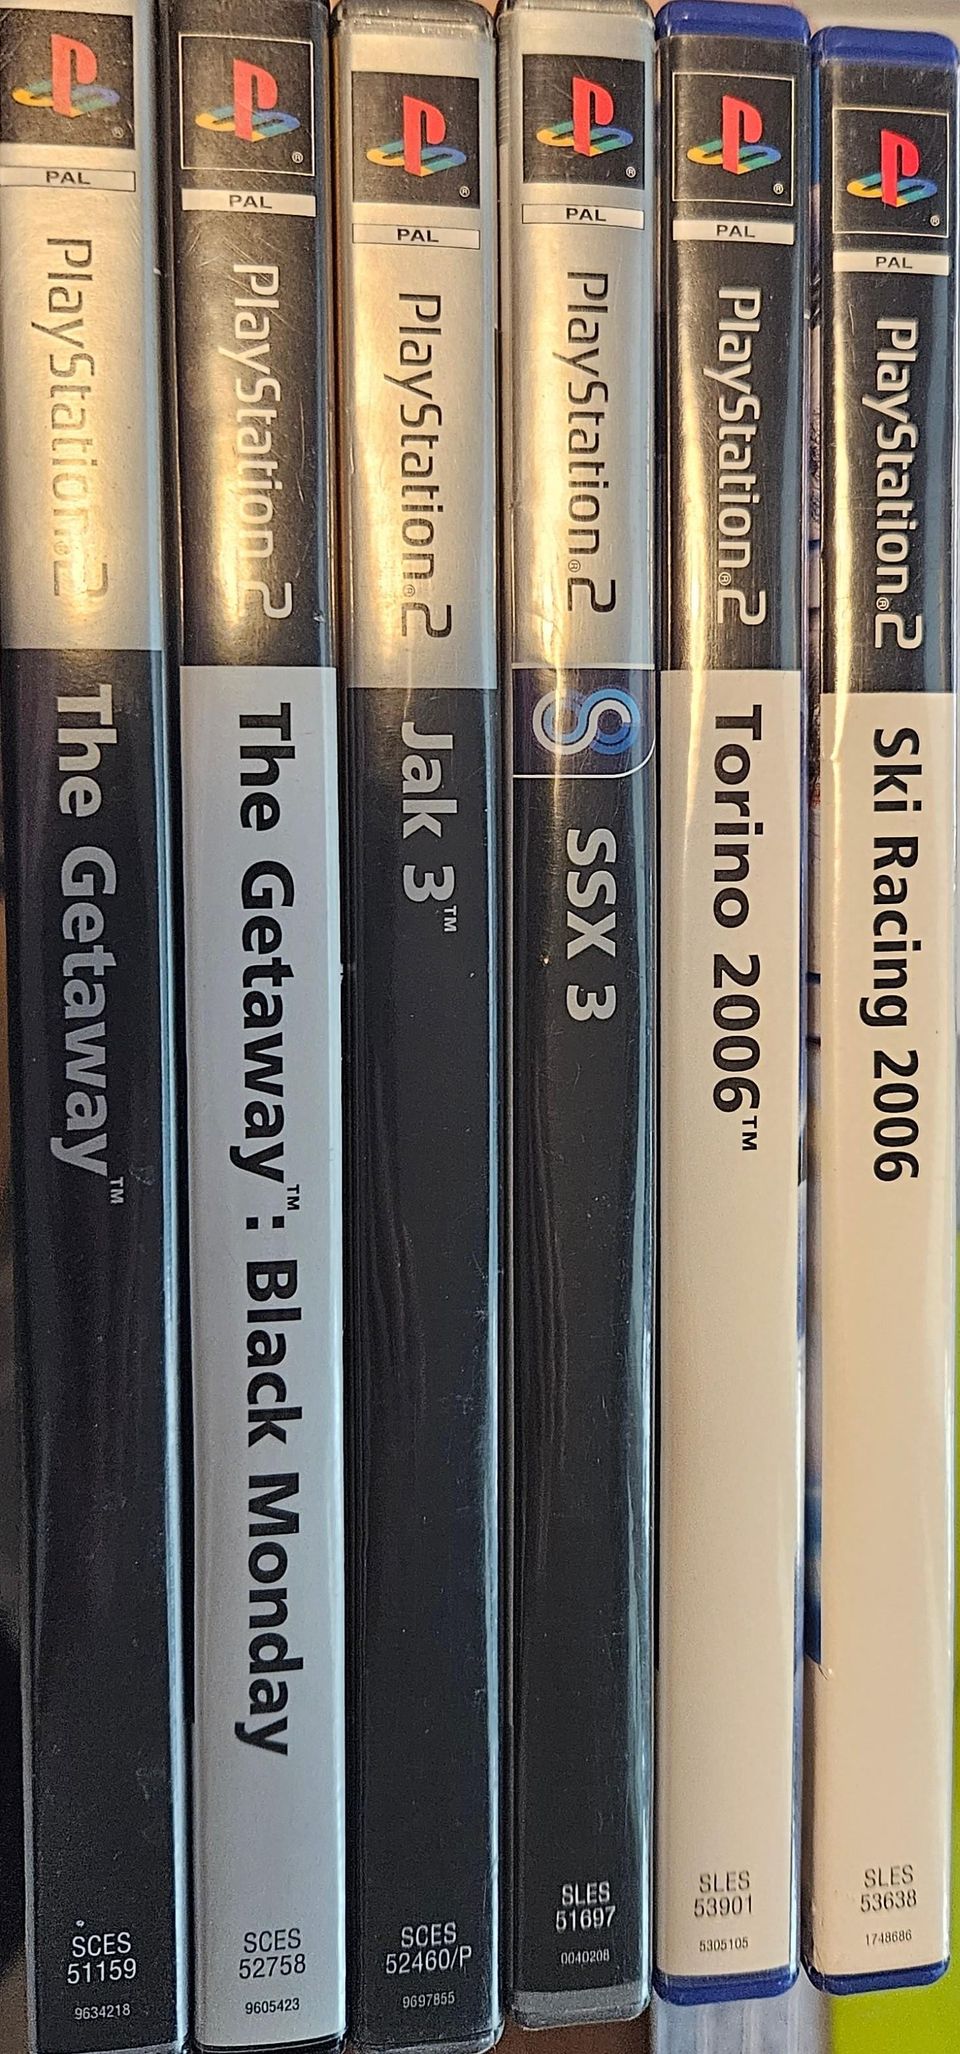 6kpl PS2 pelejä